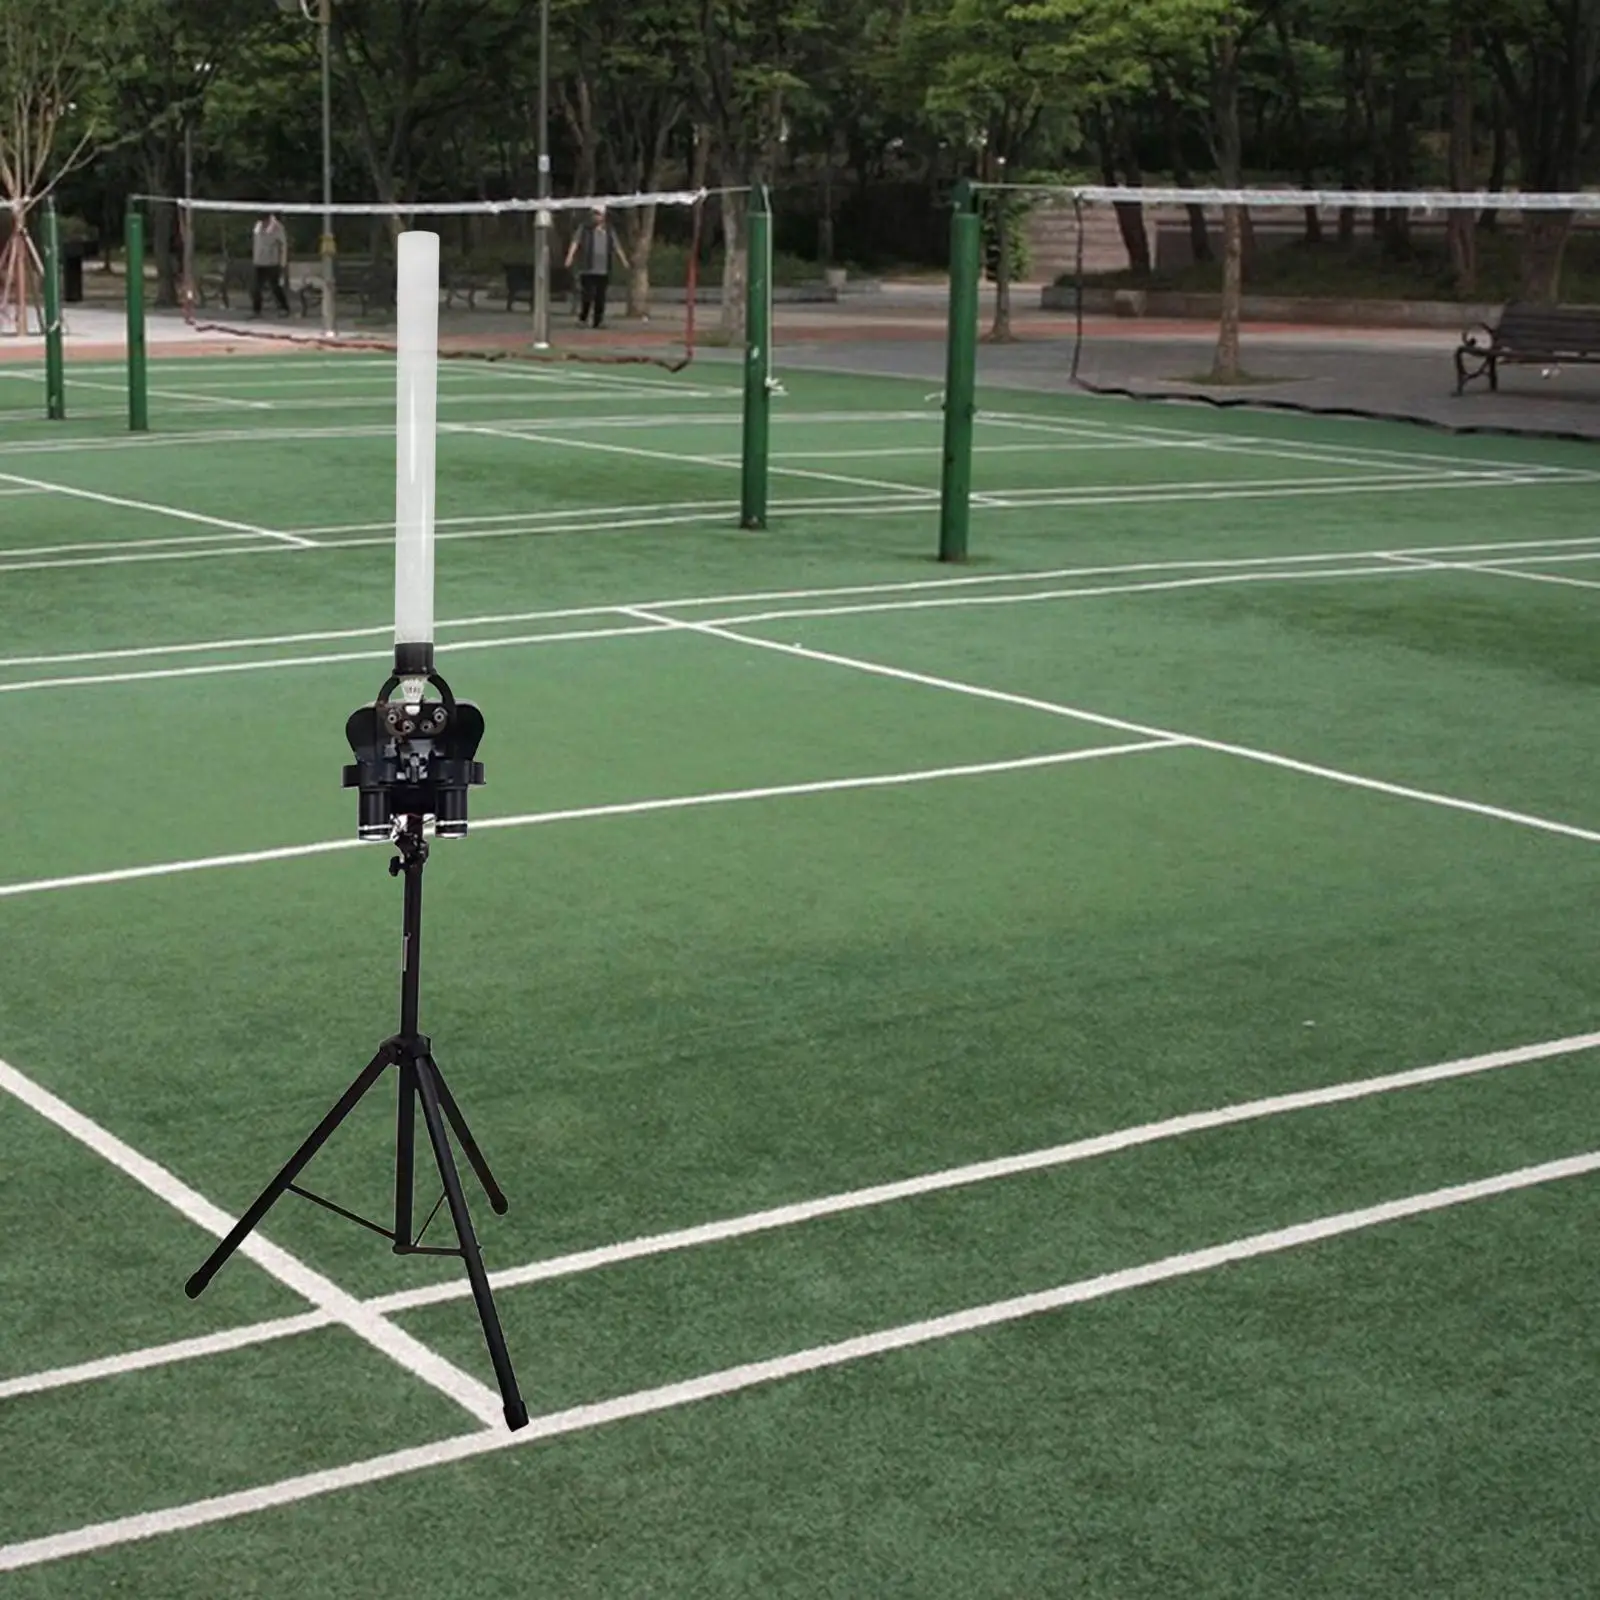 Automatic Badminton Serve Machine Badminton Launcher Practice Hold 200Pcs Ball